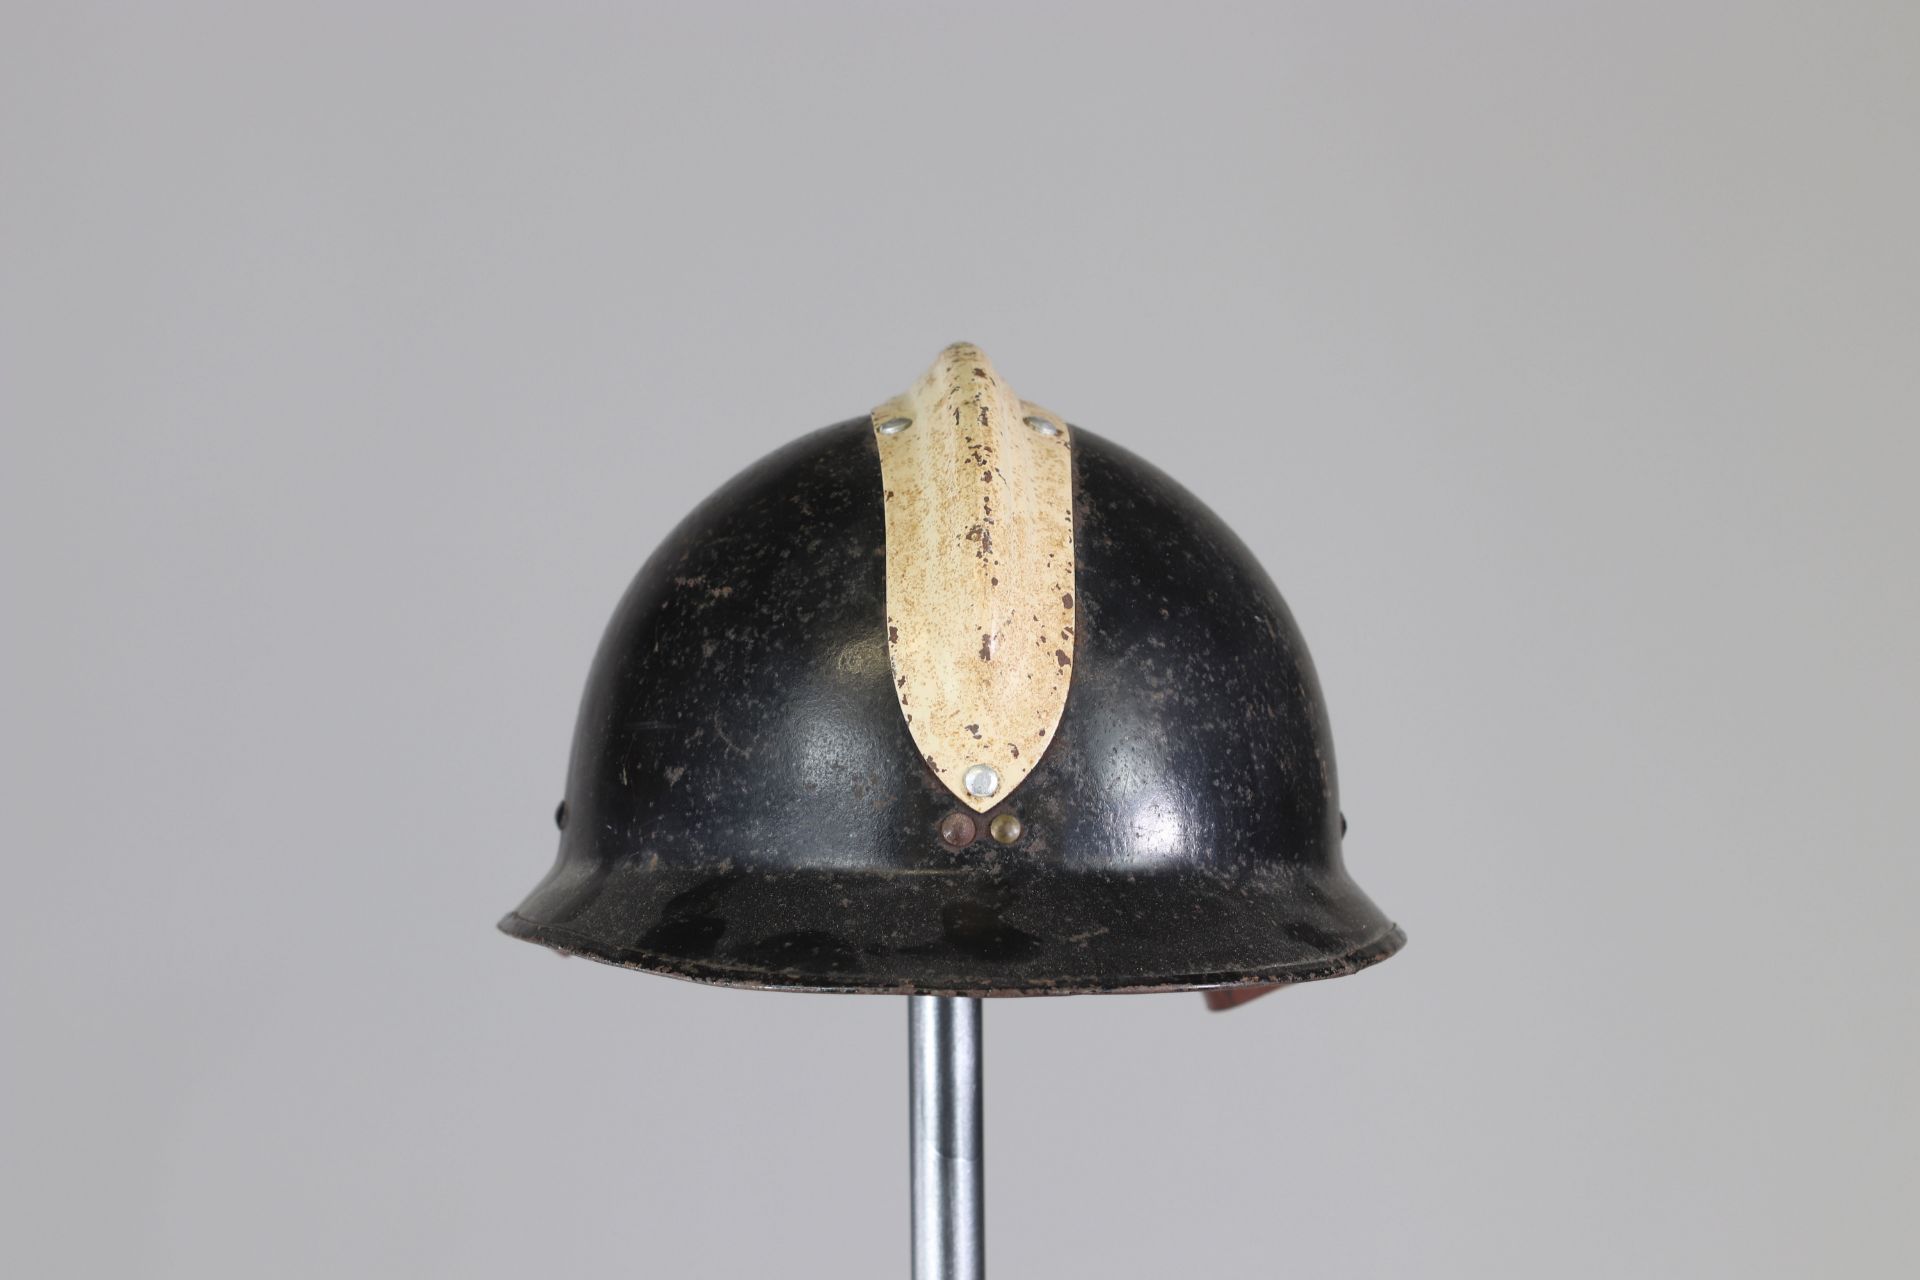 French WWII passive defense helmet - Bild 4 aus 5